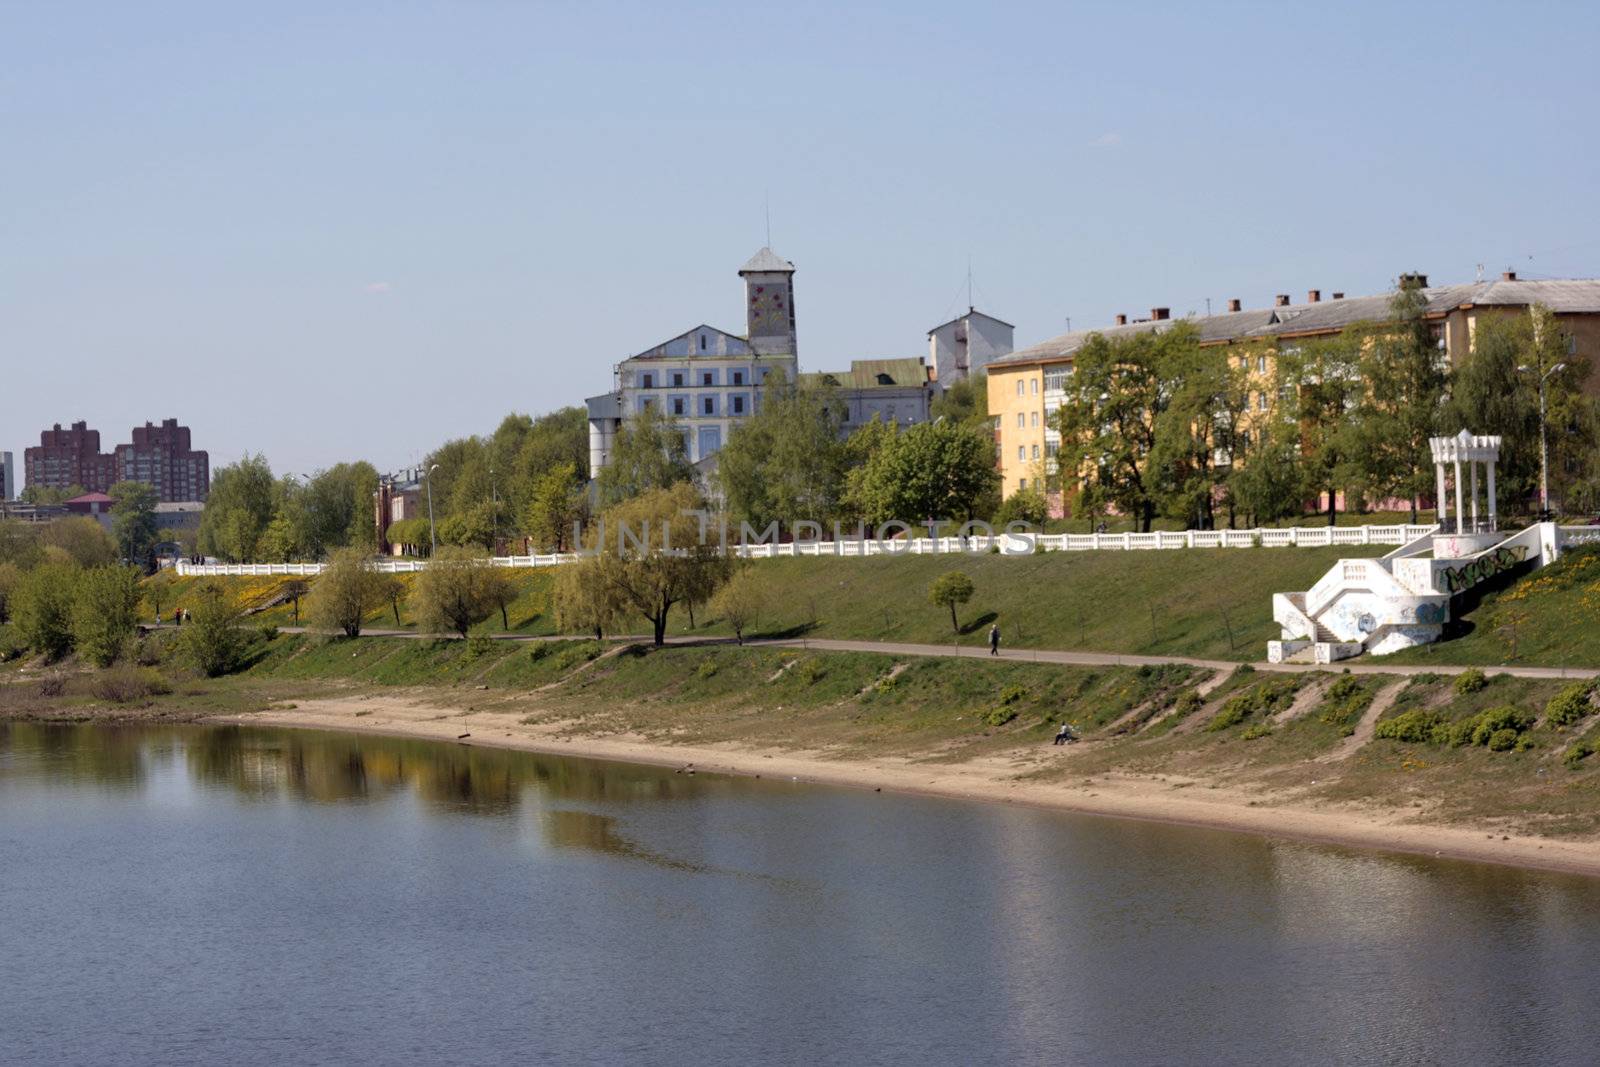 The river Volga in the city of Yaroslavl